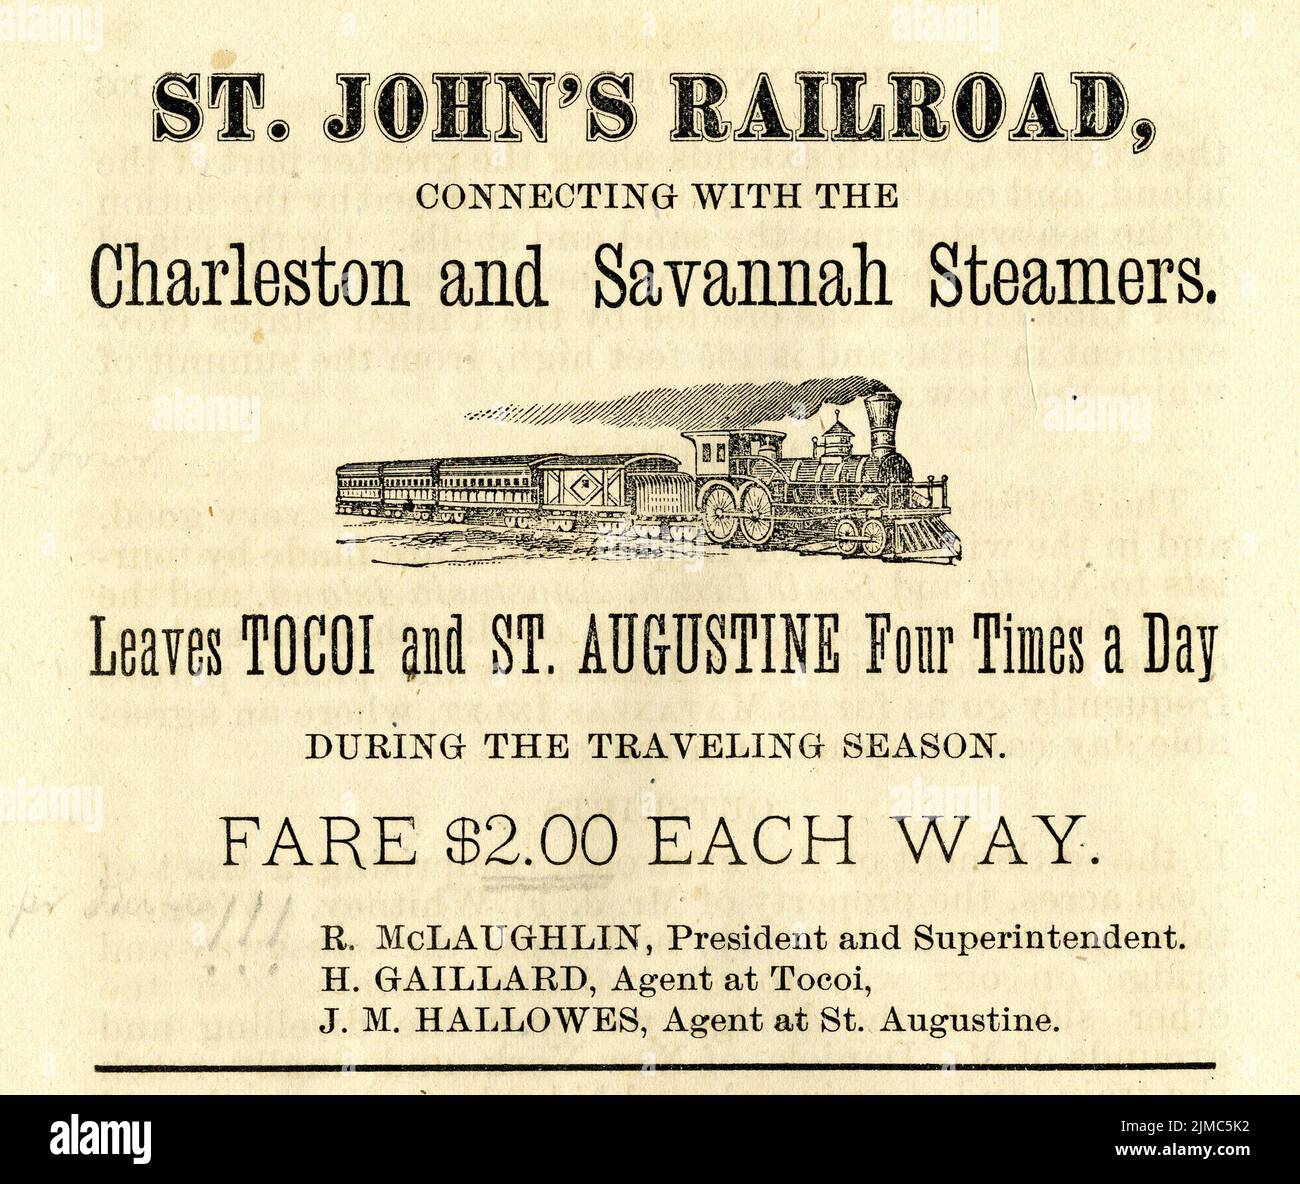 1878 Anzeige für die St. John's Railroad, die Verbindungen von Tocoi auf dem St. Johns River nach St. Augustine zur Verfügung stellte. Der Zug verließ Tocoi und St. Augustine viermal täglich während der „Reisesaison“ und die Fahrt betrug $2,00 pro Strecke. Stockfoto